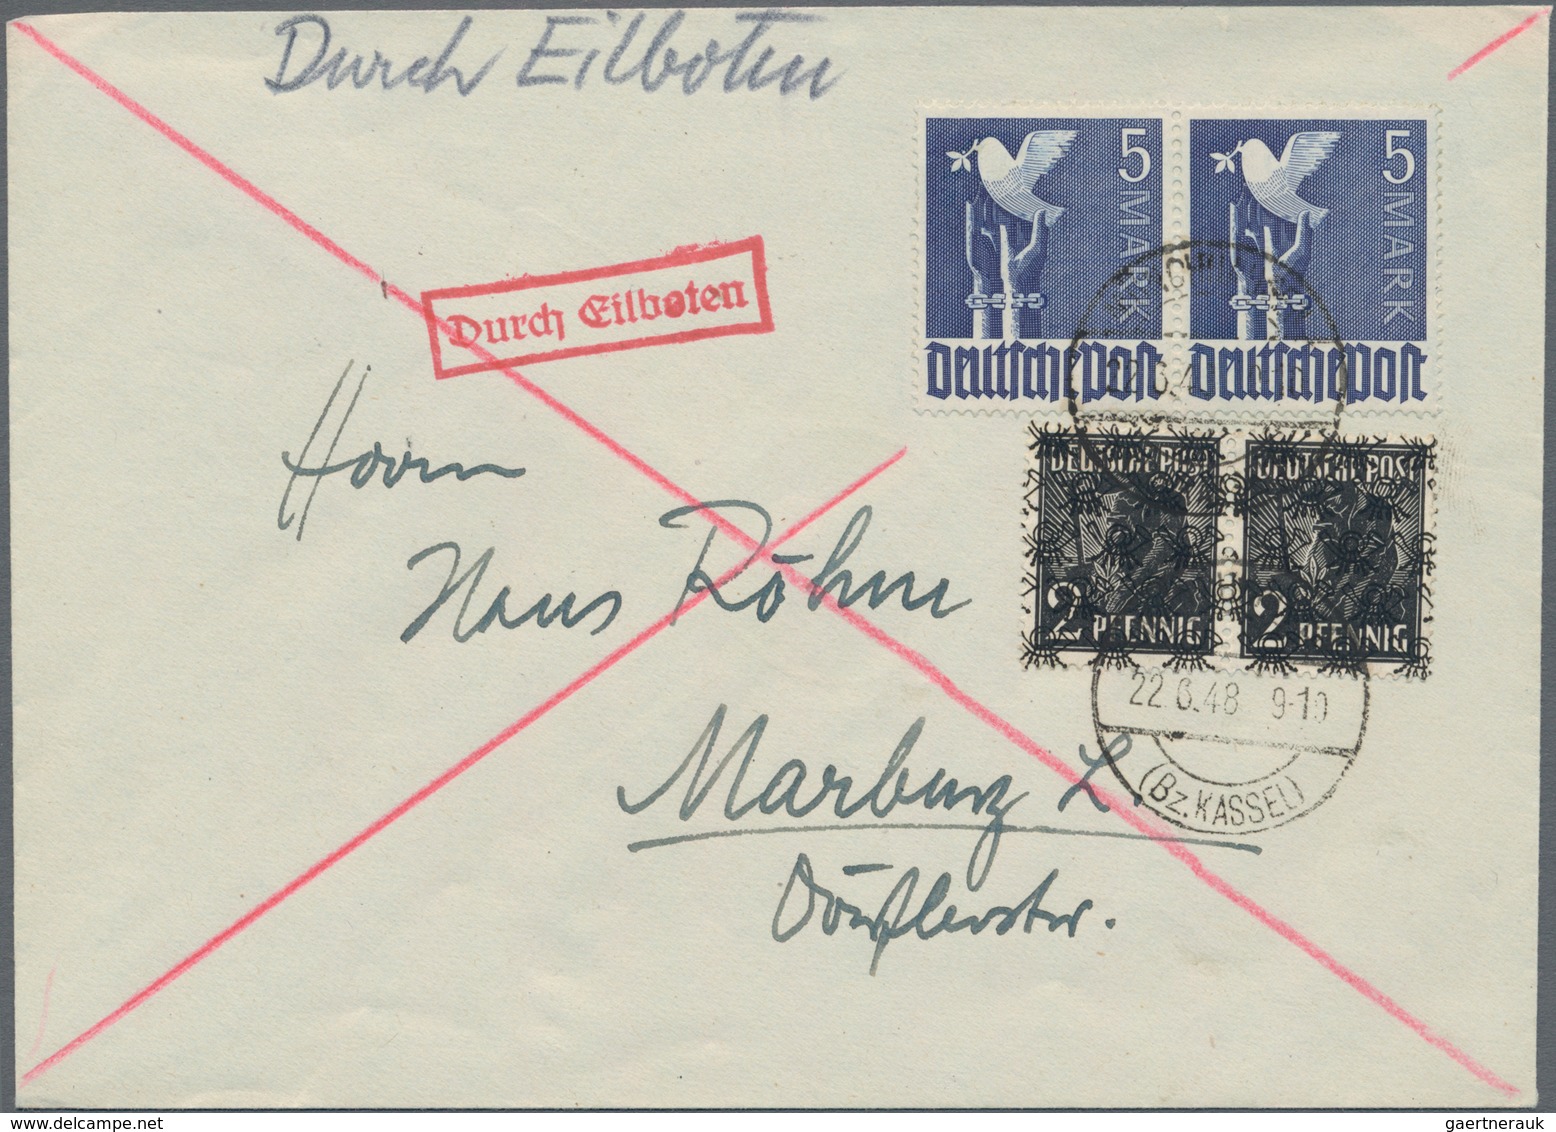 Bizone: 1945/1949, reichhaltige Sammlung mit ca.185 Belegen im Ringbinder, dabei als Schwerpunkt Ein